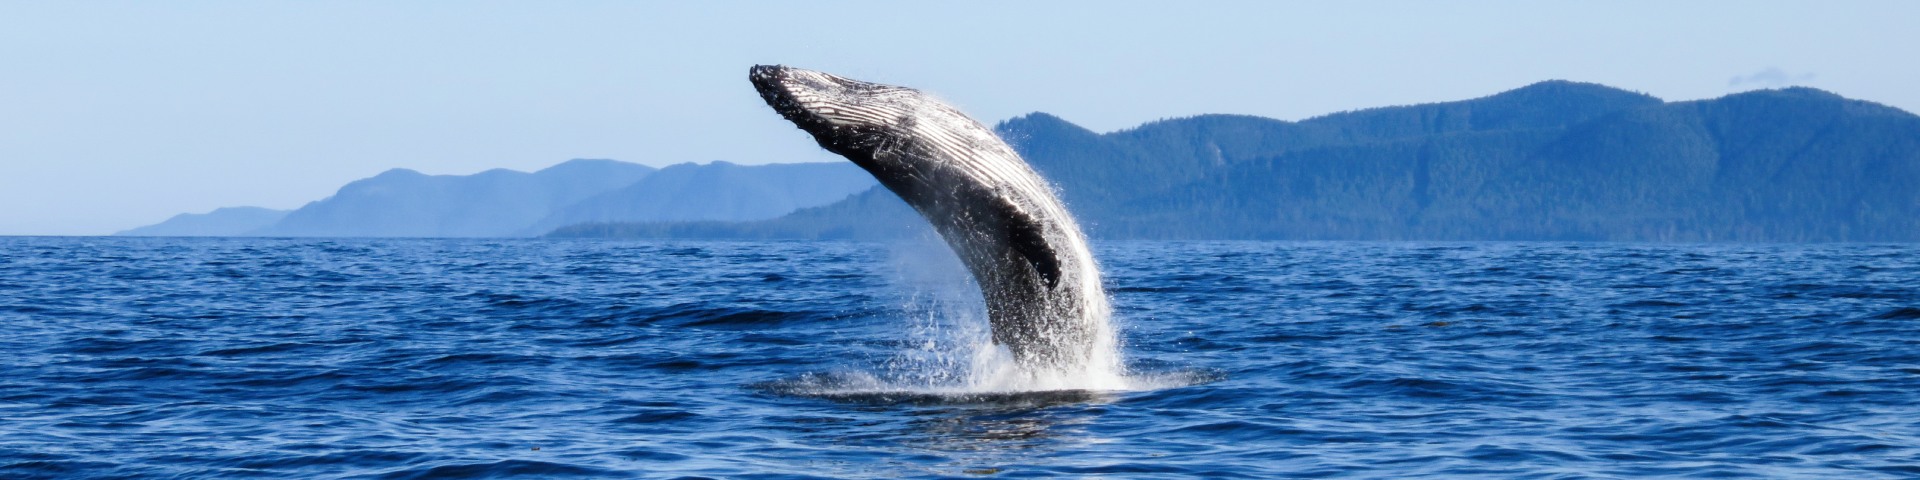 Une grande baleine bondit hors de l’eau près des côtes.